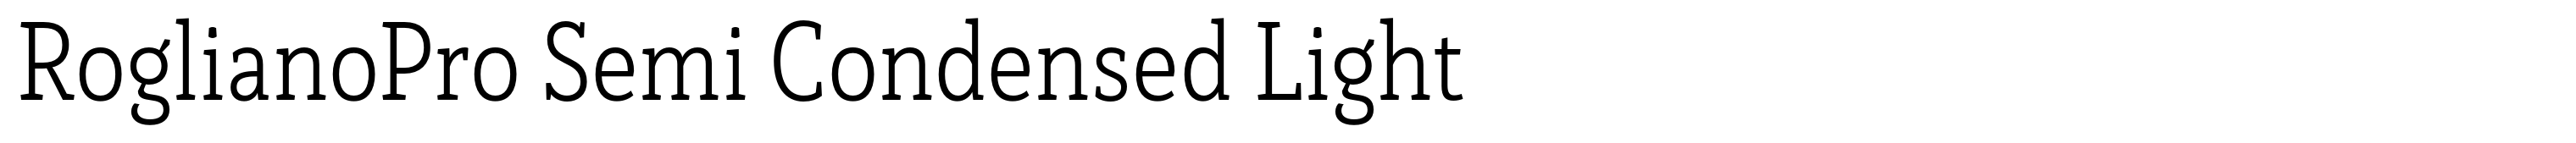 RoglianoPro Semi Condensed Light